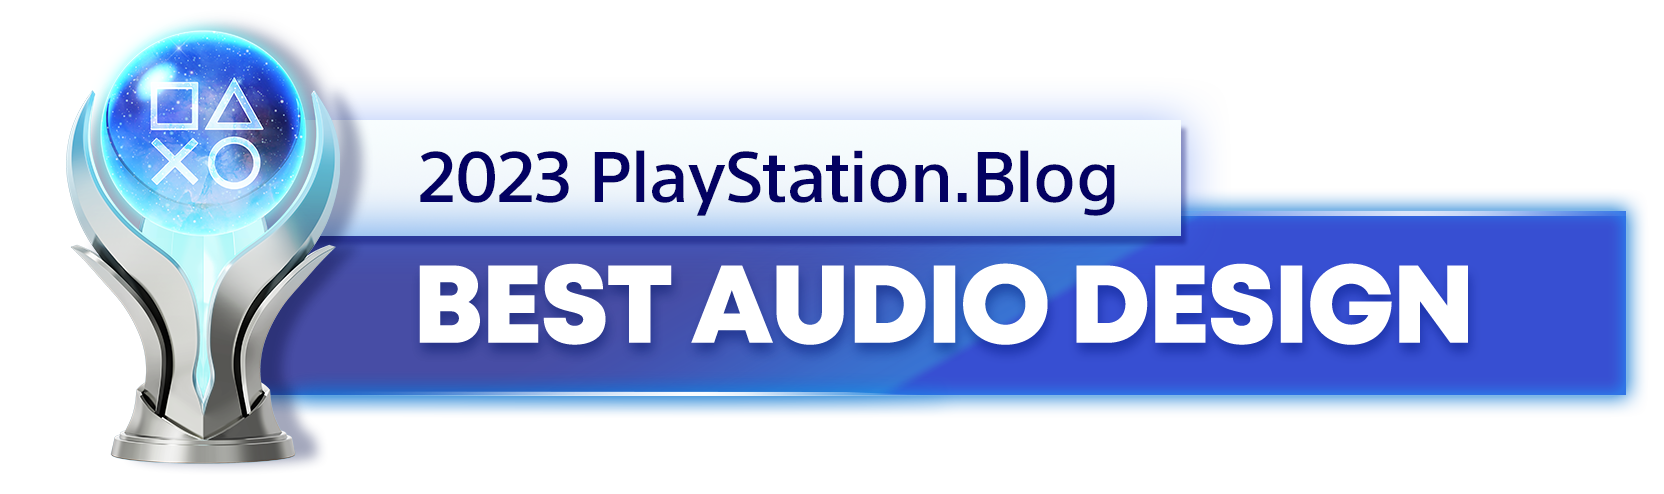  "Platinum Trophy for the 2023 PlayStation Blog Best Audio Design Winner"